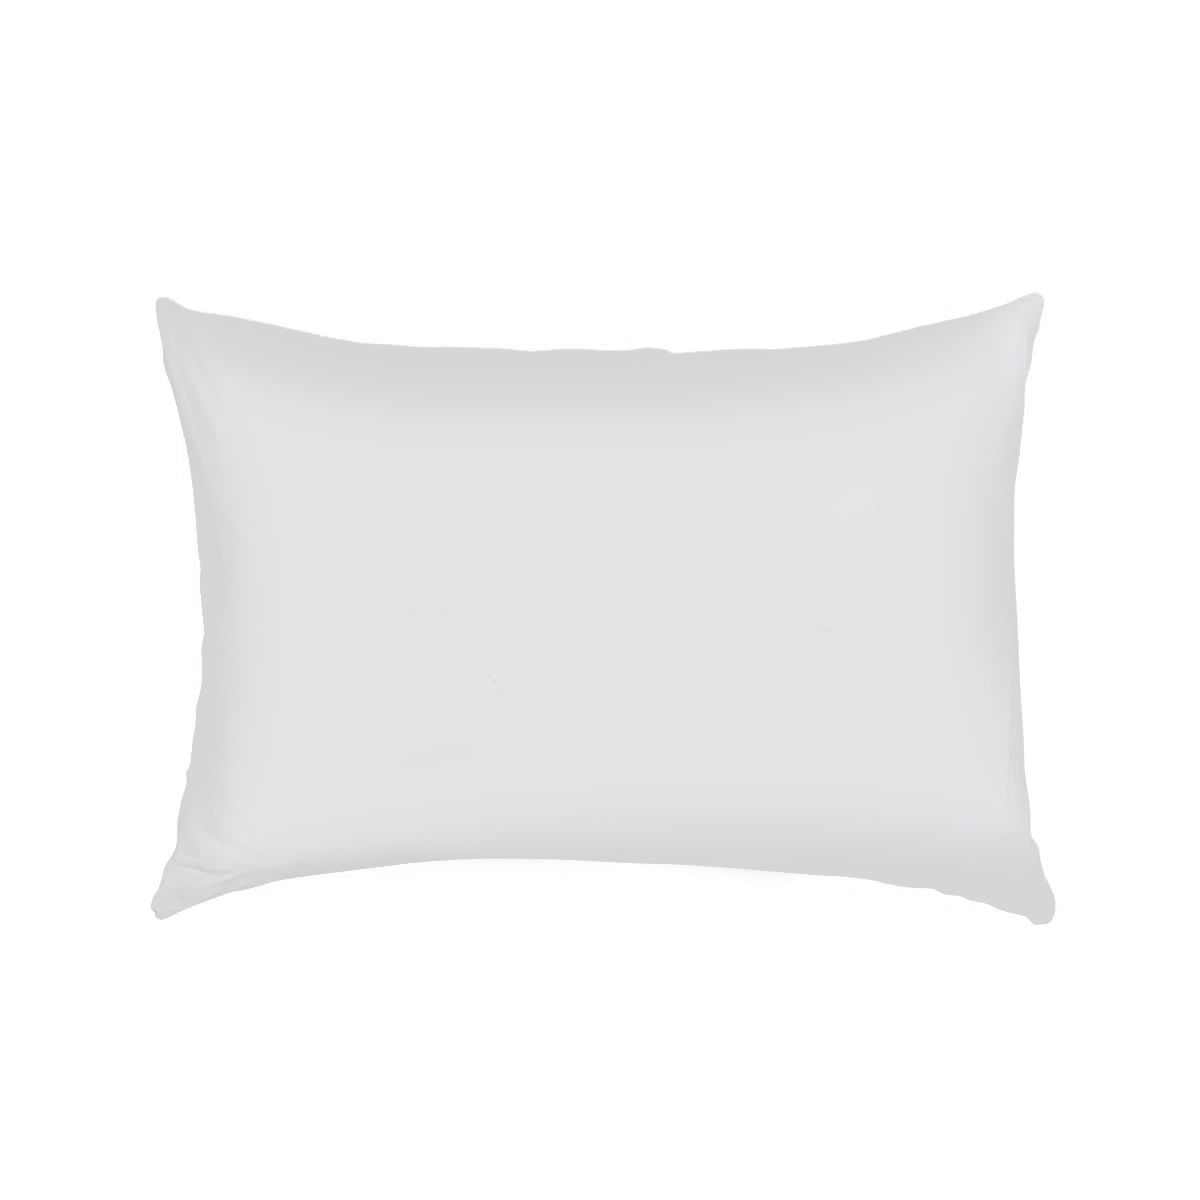 kit-2-travesseiros-em-fibra-de-silicone-45x65-ortobom-due-branco-3.jpg